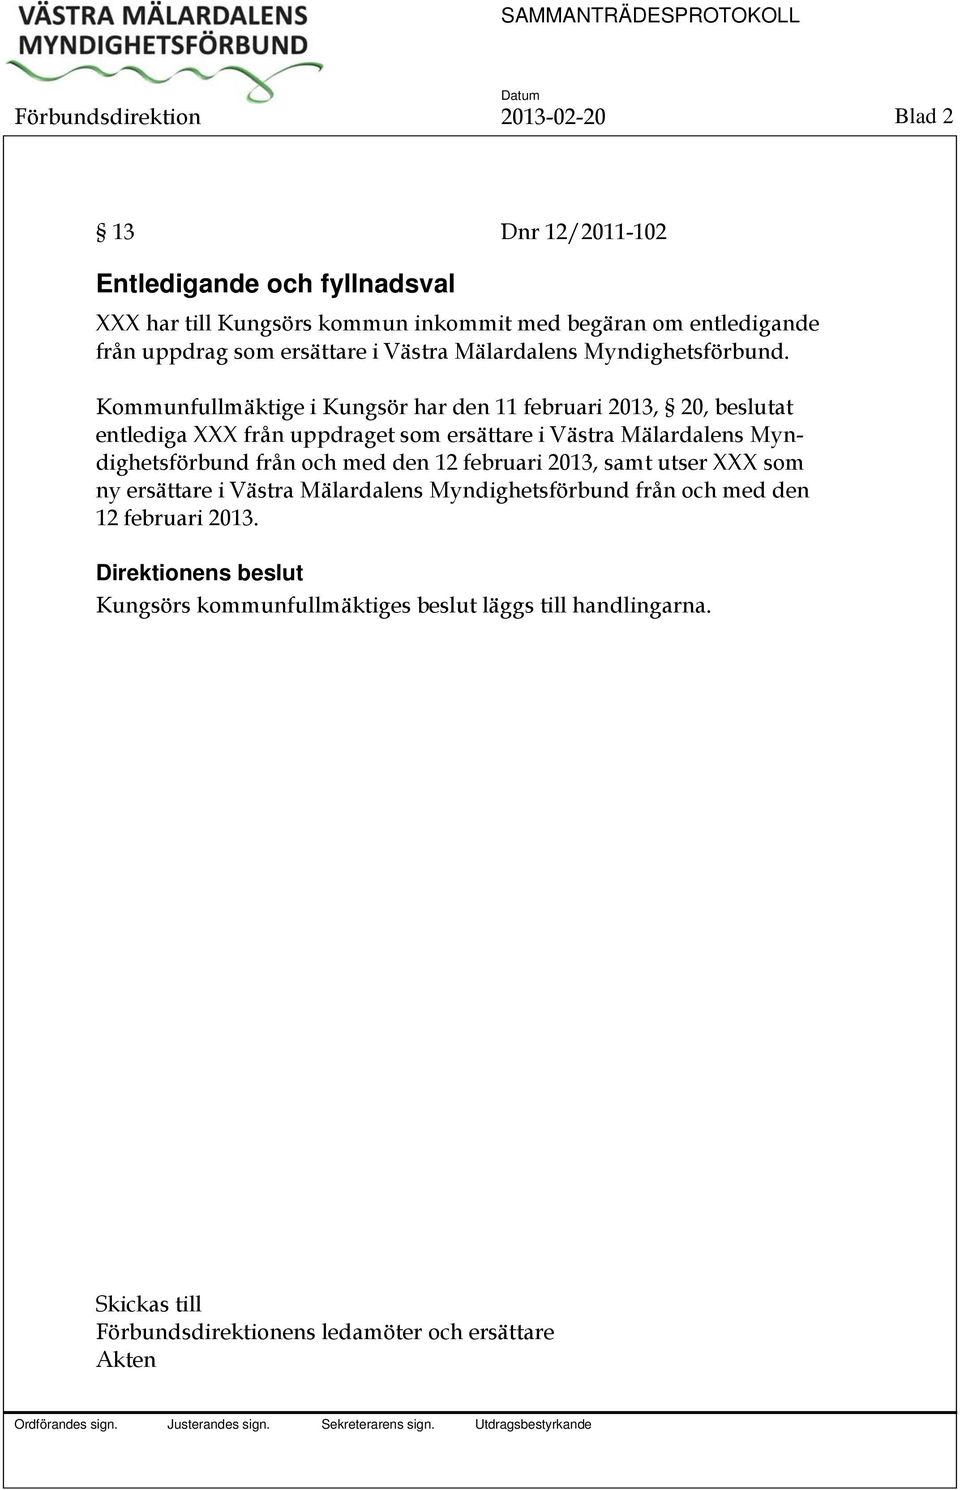 Kommunfullmäktige i Kungsör har den 11 februari 2013, 20, beslutat entlediga XXX från uppdraget som ersättare i Västra Mälardalens Myndighetsförbund från